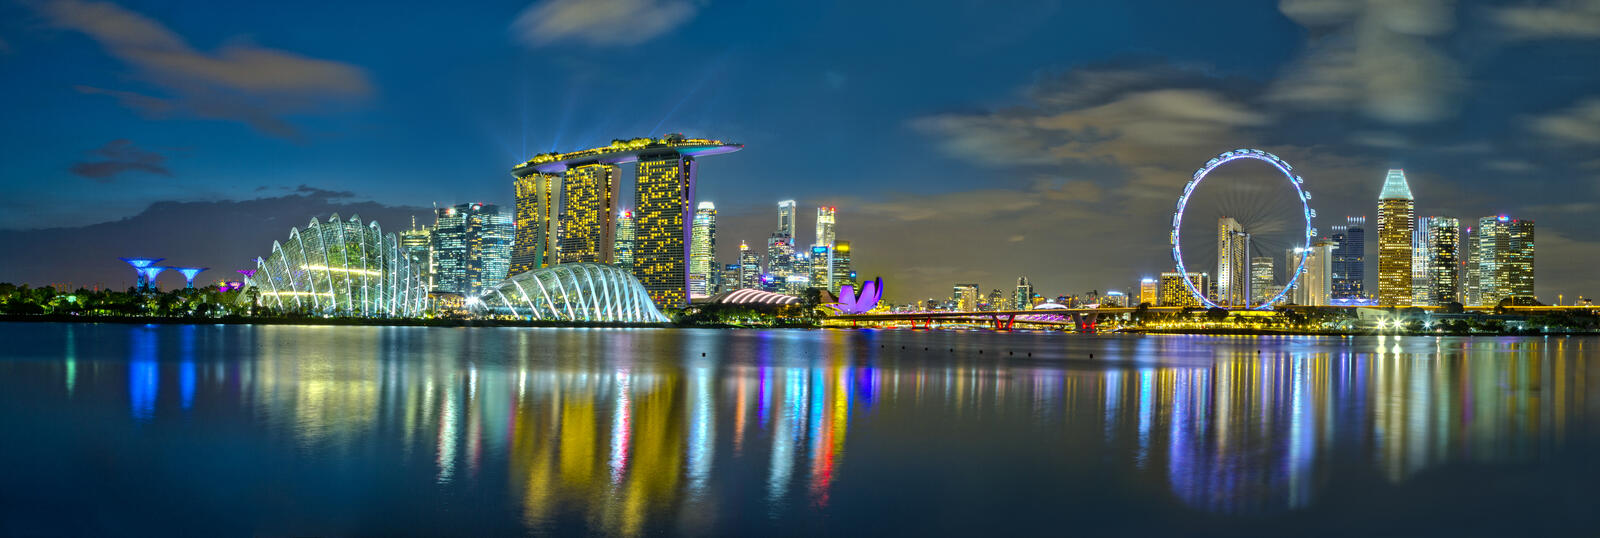 Обои Сингапур освещение панорама на рабочий стол